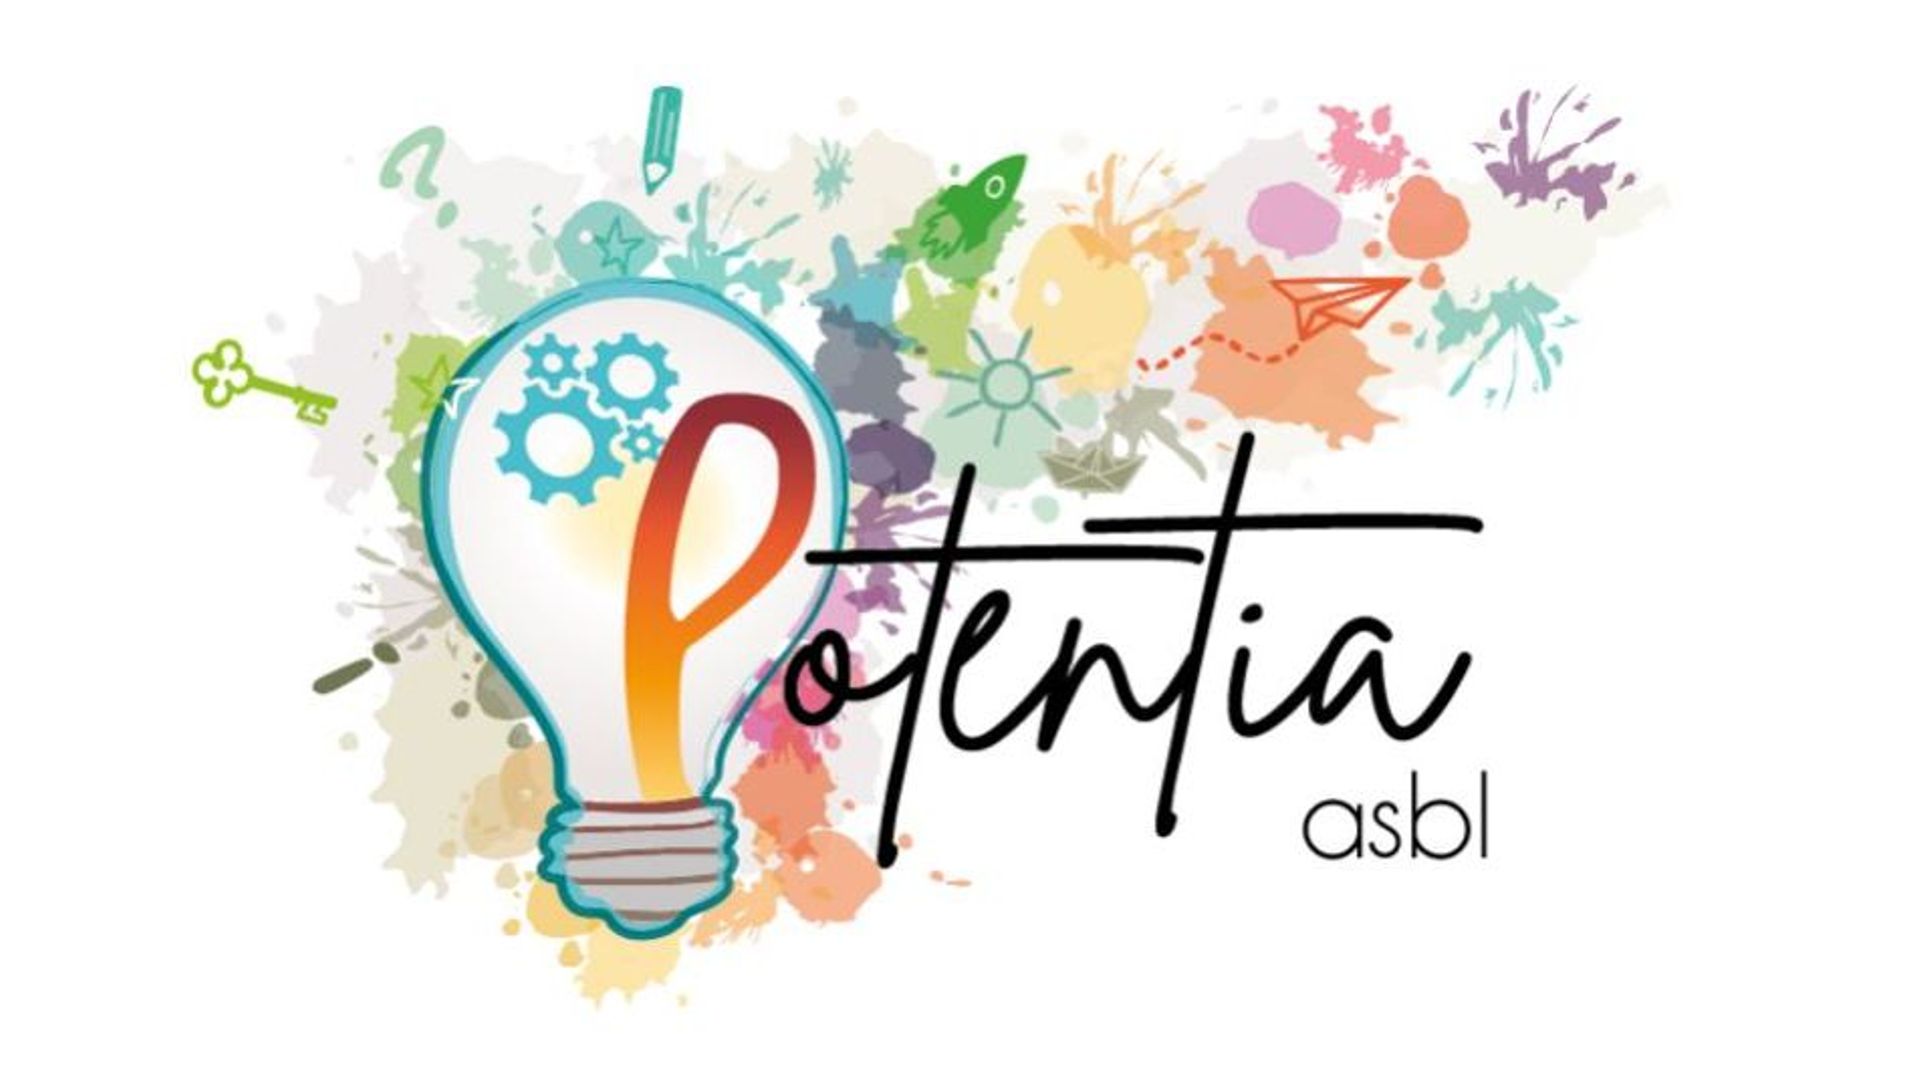 L’asbl Potentia vient de créer à Ottignies un centre d’accueil pour les jeunes confrontés au décrochage scolaire ou sur le point de quitter leur cursus scolaire.